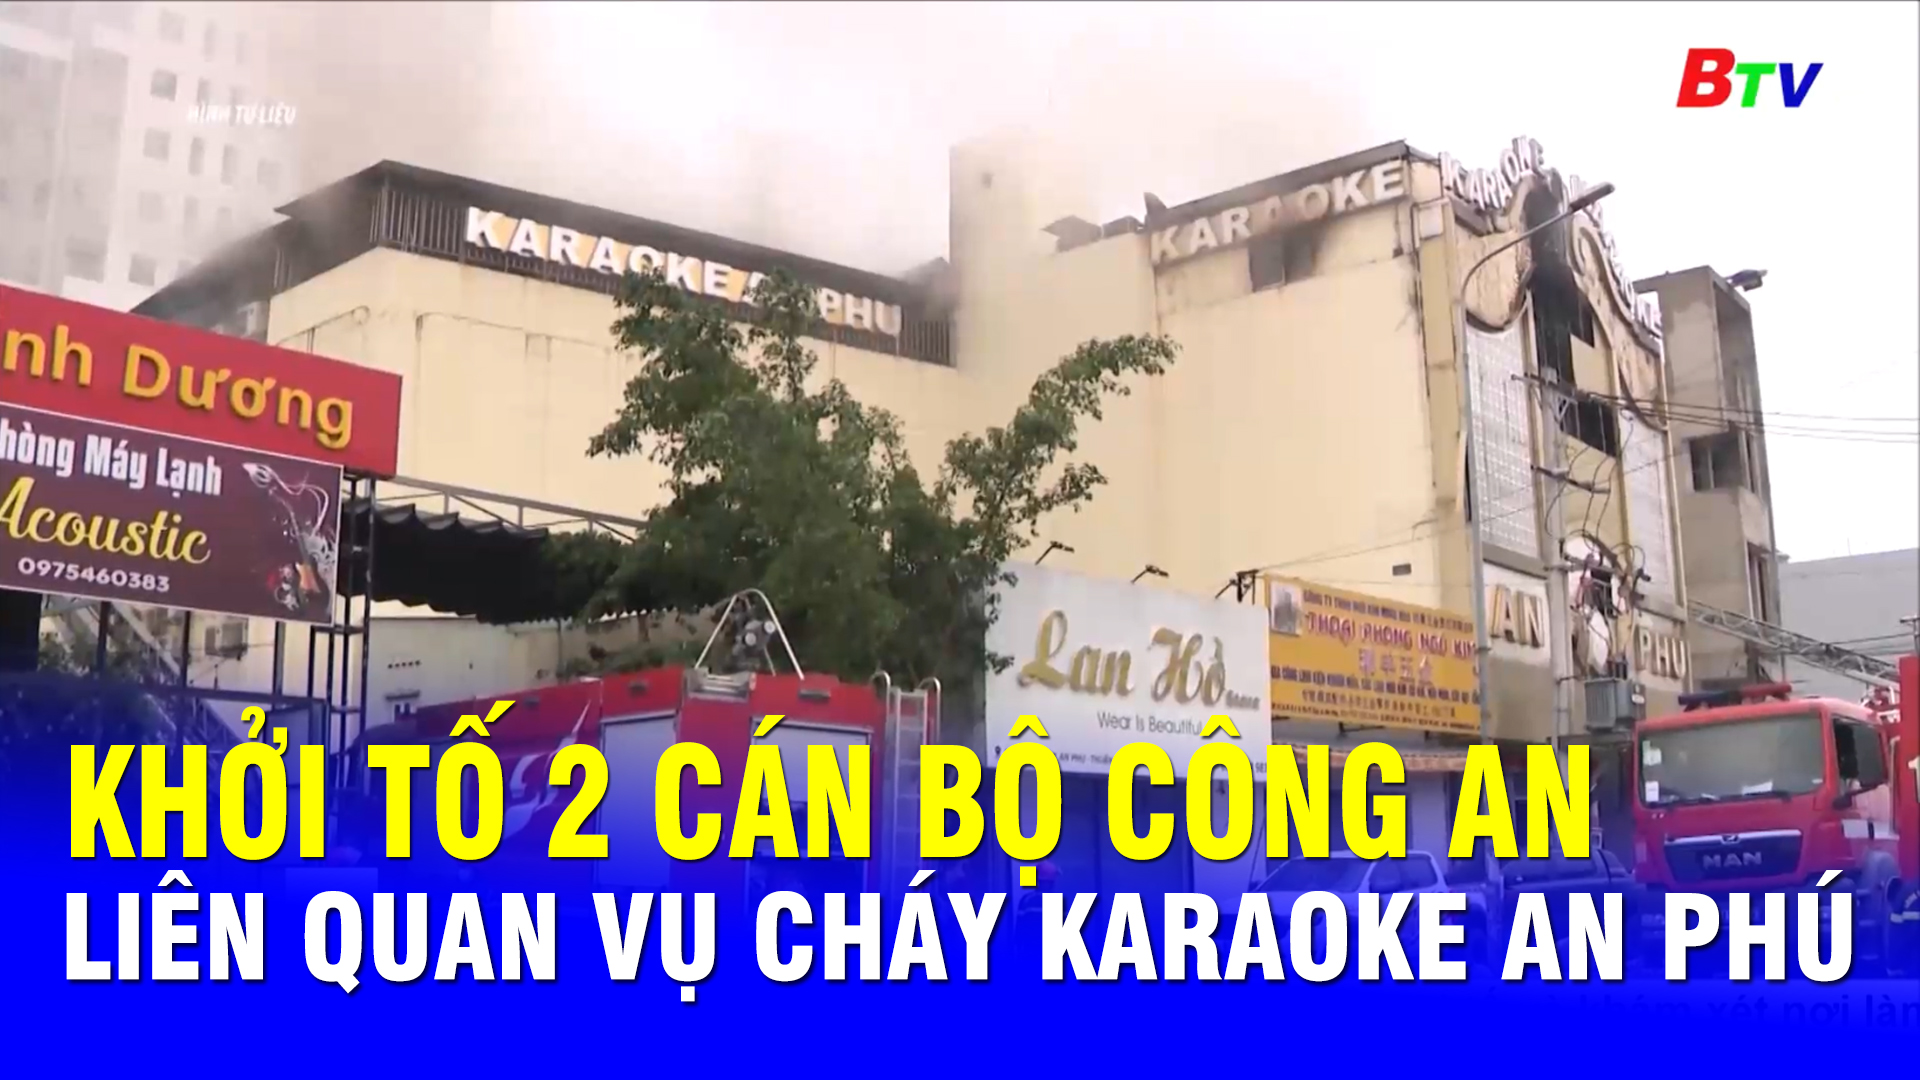 Khởi tố 2 cán bộ công an liên quan vụ cháy karaoke An Phú